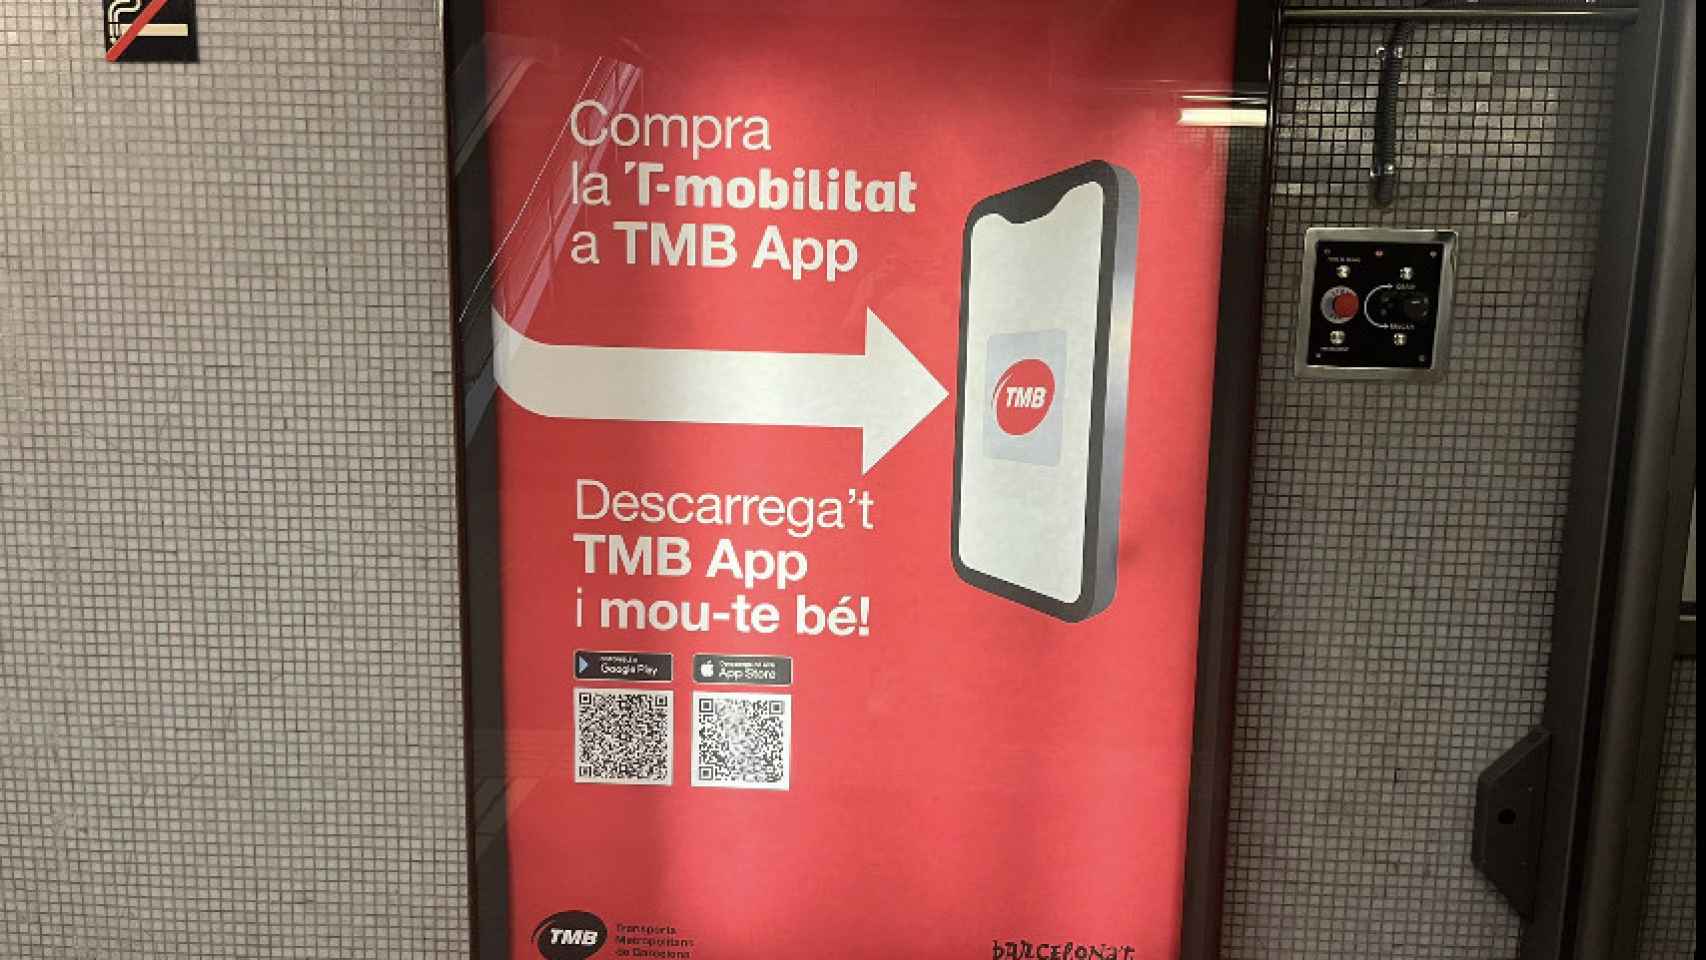 Imagen promocional de la app de la T-Mobilitat en Barcelona para Android e iPhone, a pesar de que en este último sistema no funciona